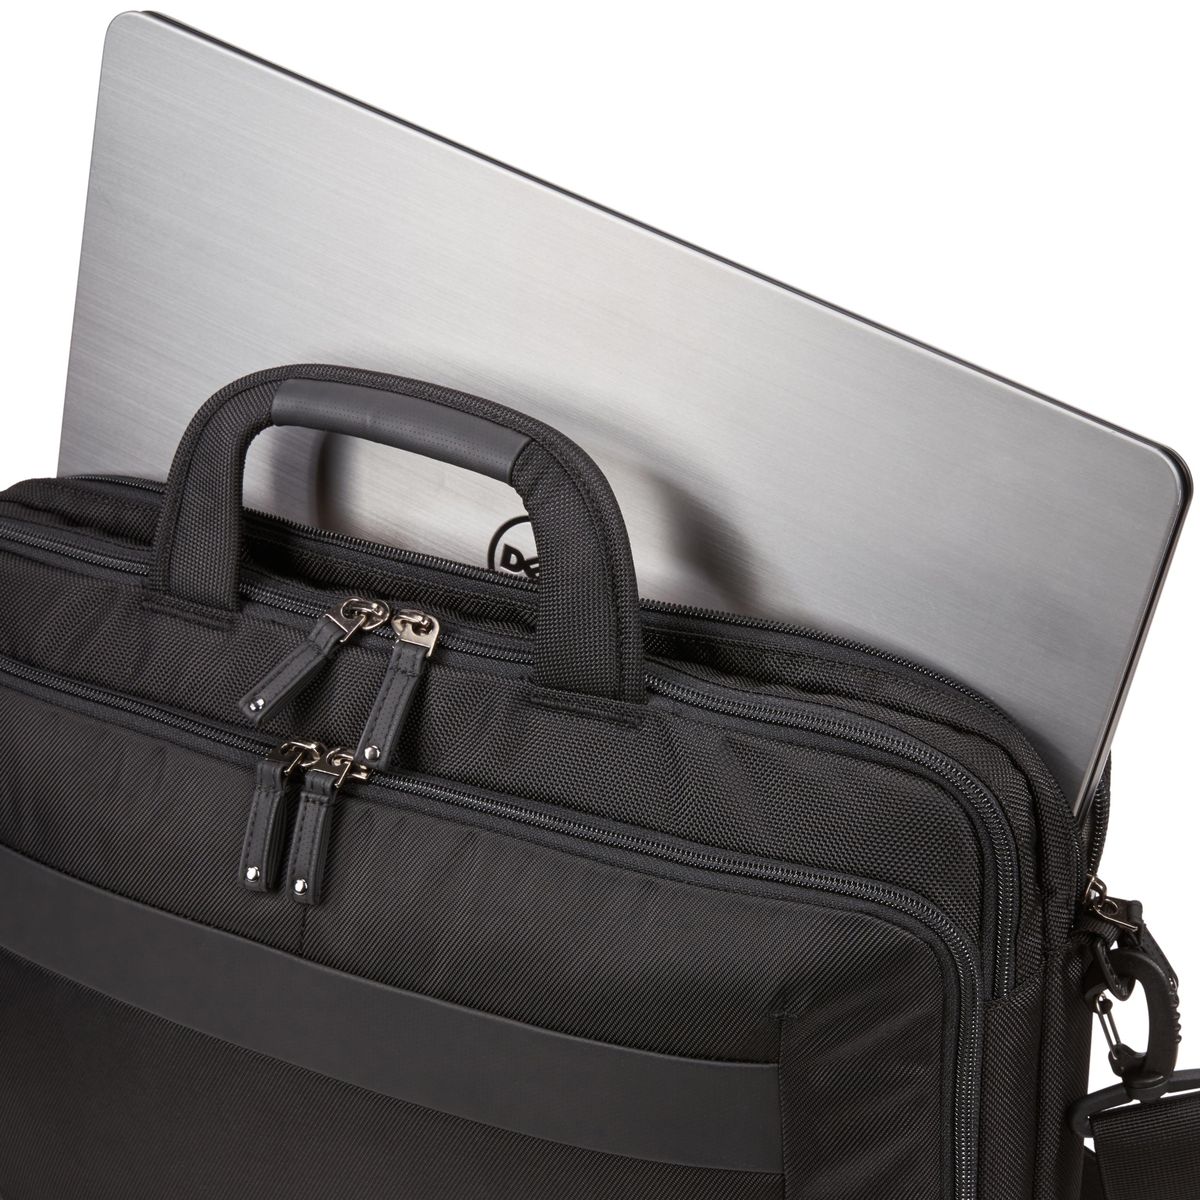 Case Logic Notion 15.6" Laptop Bag